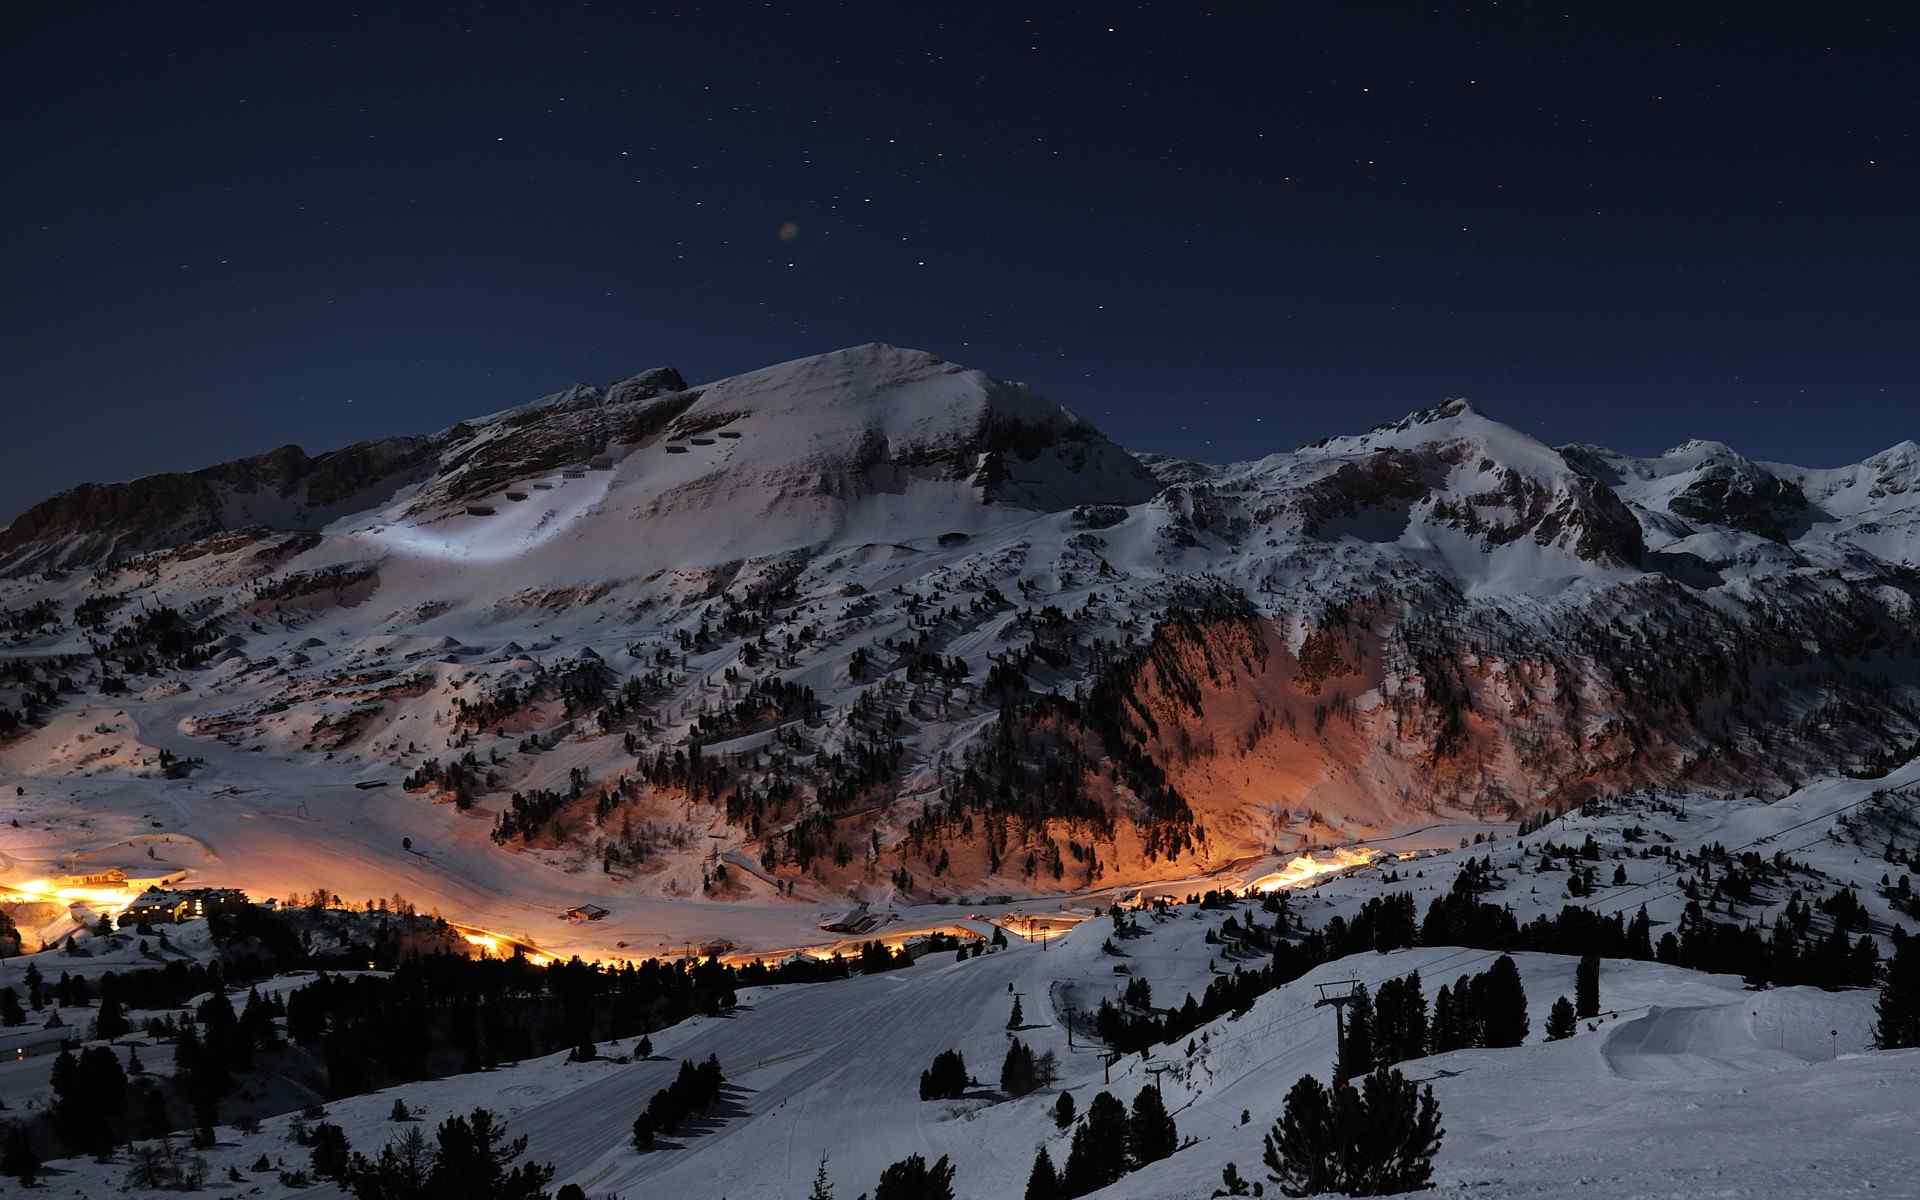 雪山夜景摄影壁纸